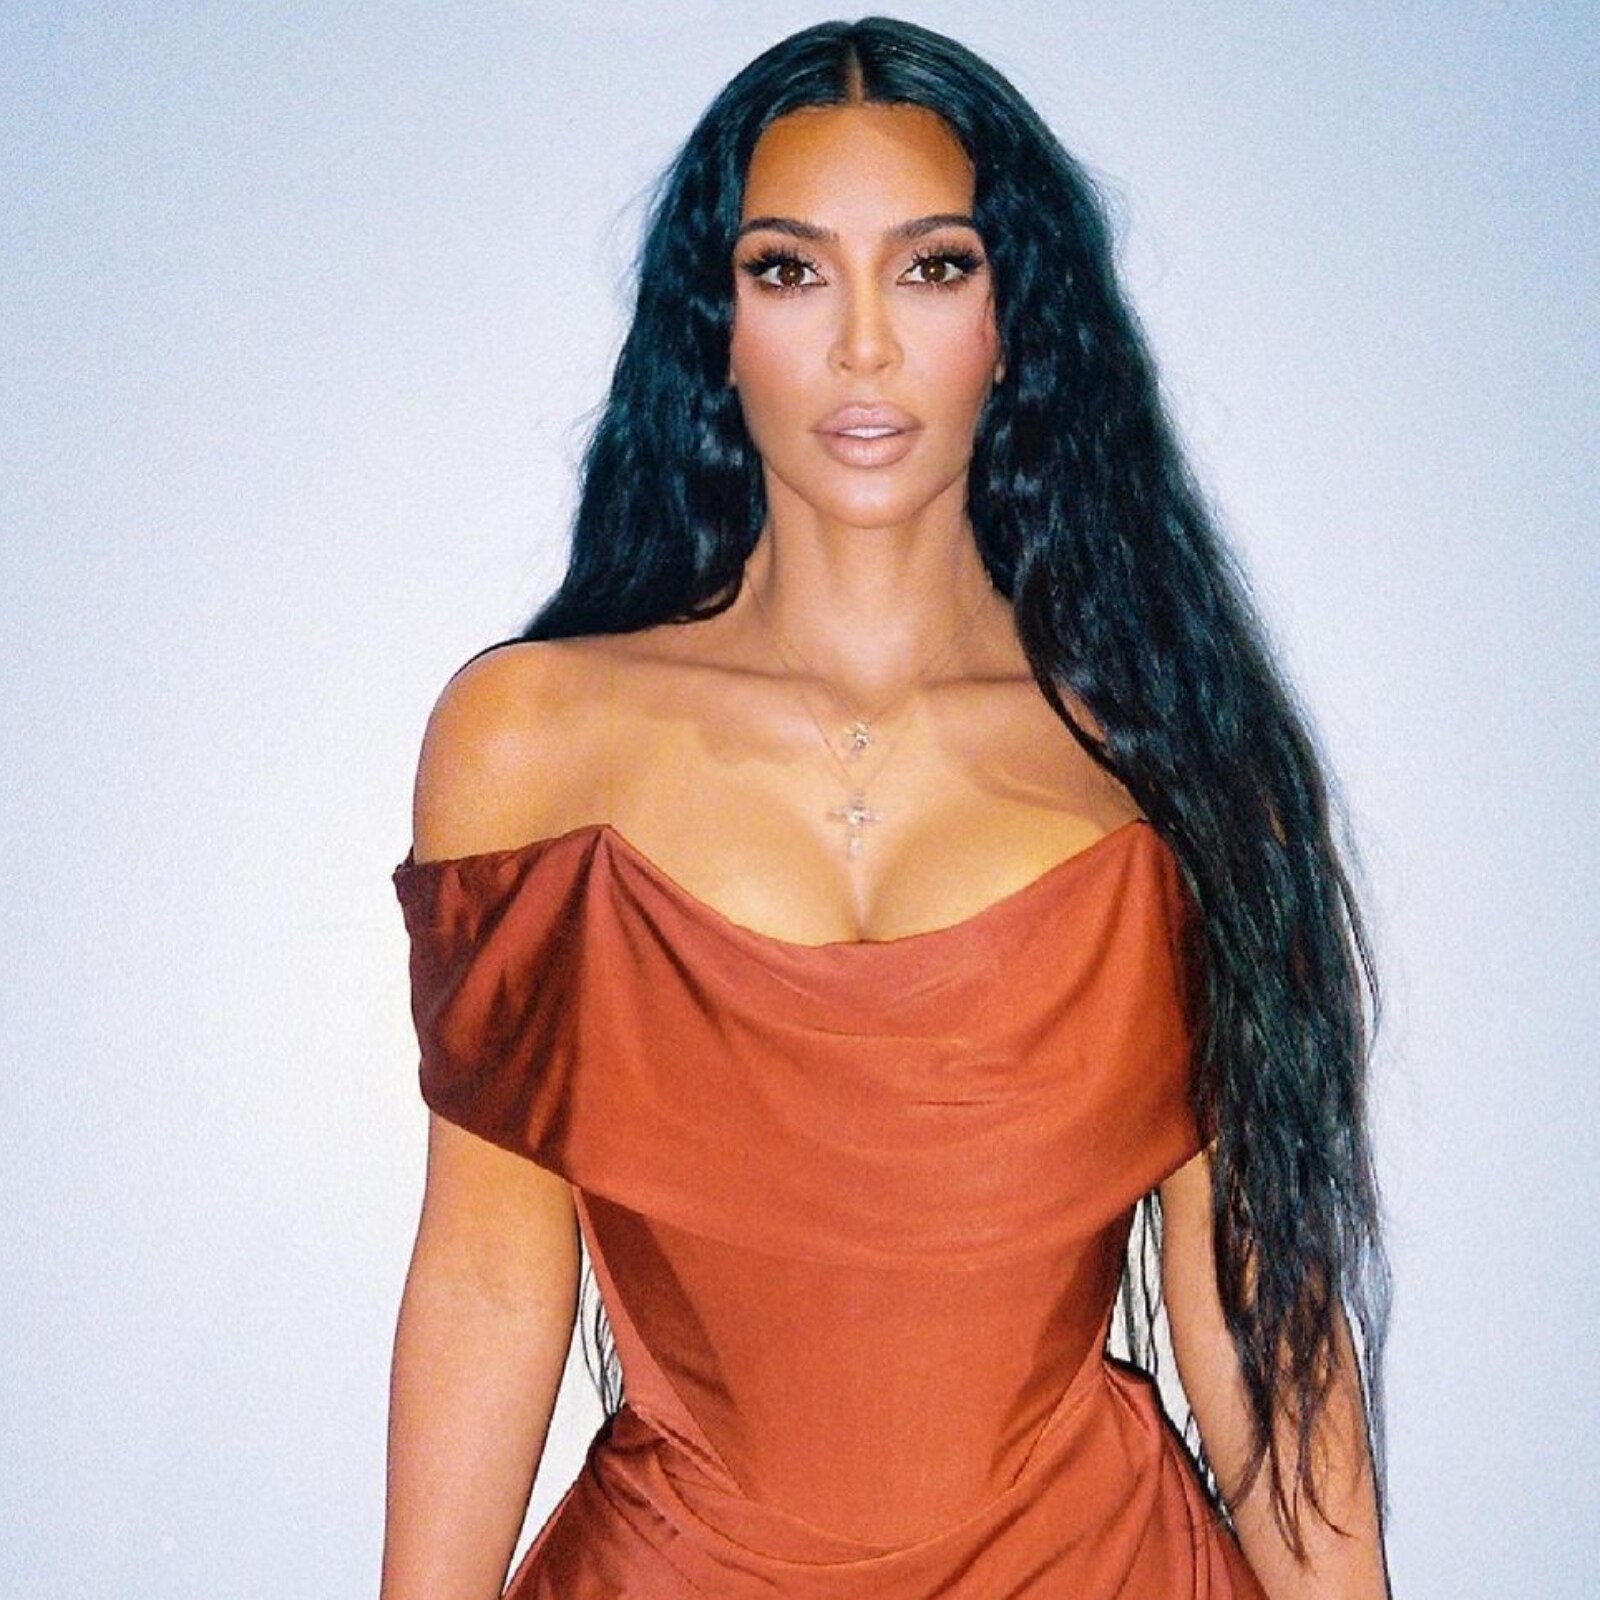 Kim Kardashian 'Shaken' by Controversial Balenciaga Ad